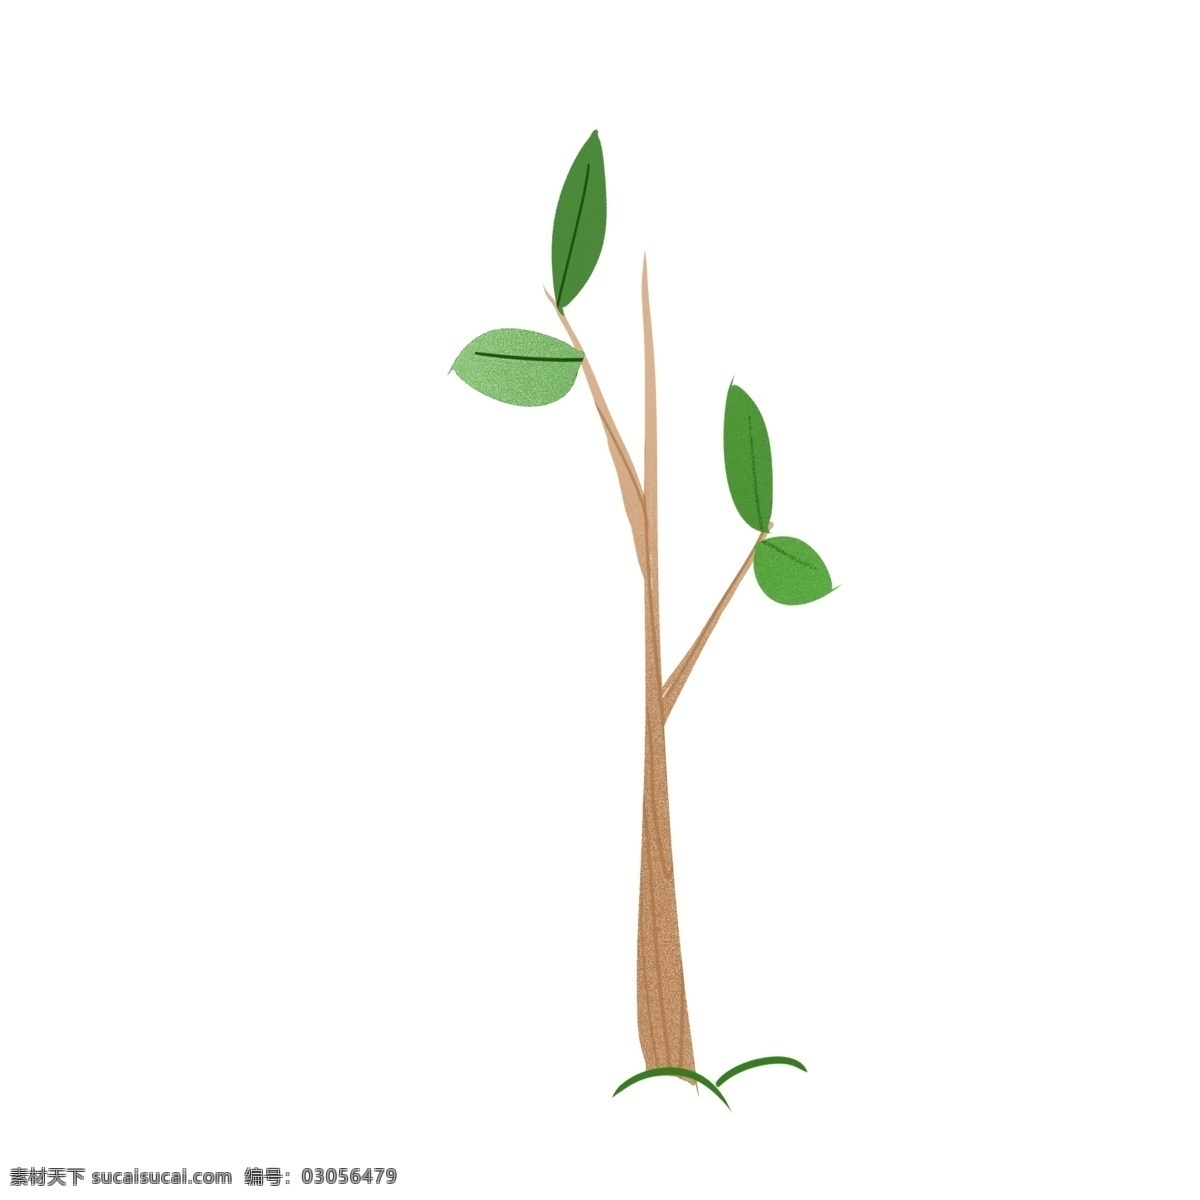 绿色 清新 小 树苗 卡通 手绘 植物 树木 绿叶 插画